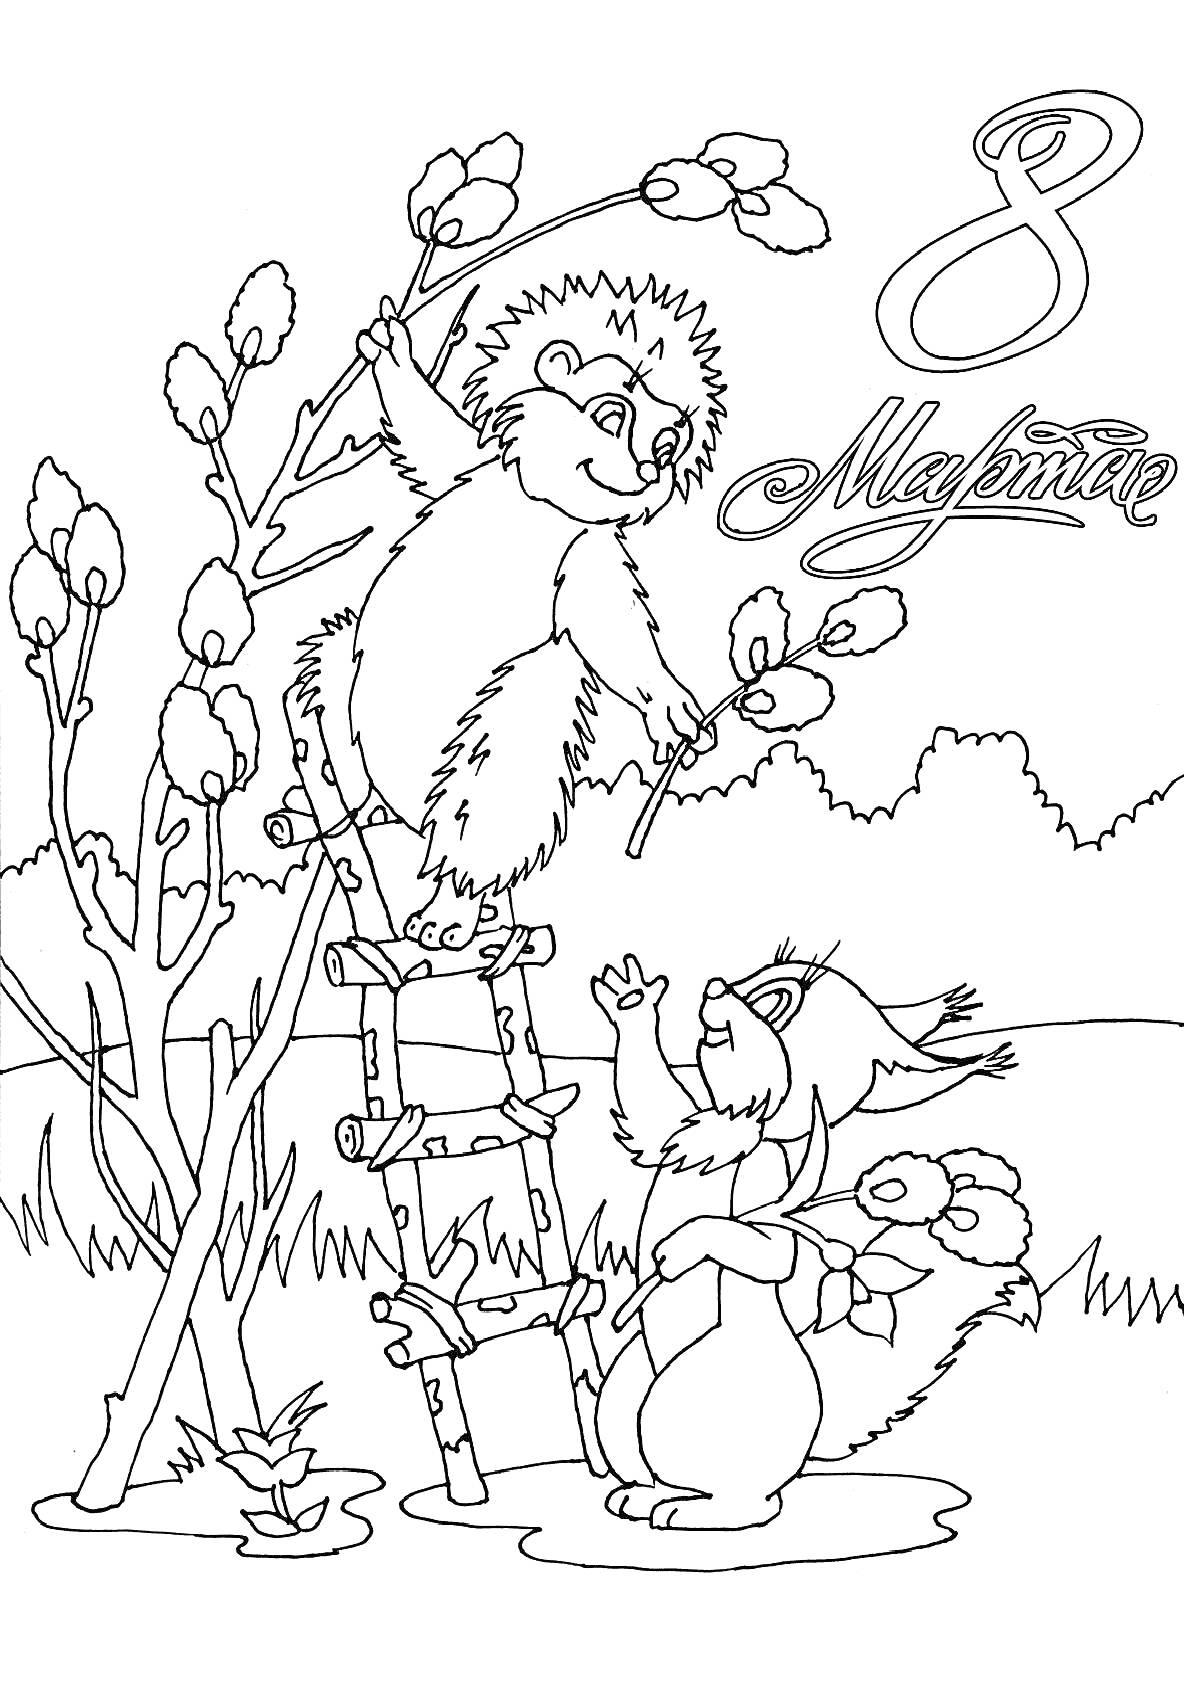 Ёжик и белка празднуют 8 марта у дерева с вербой